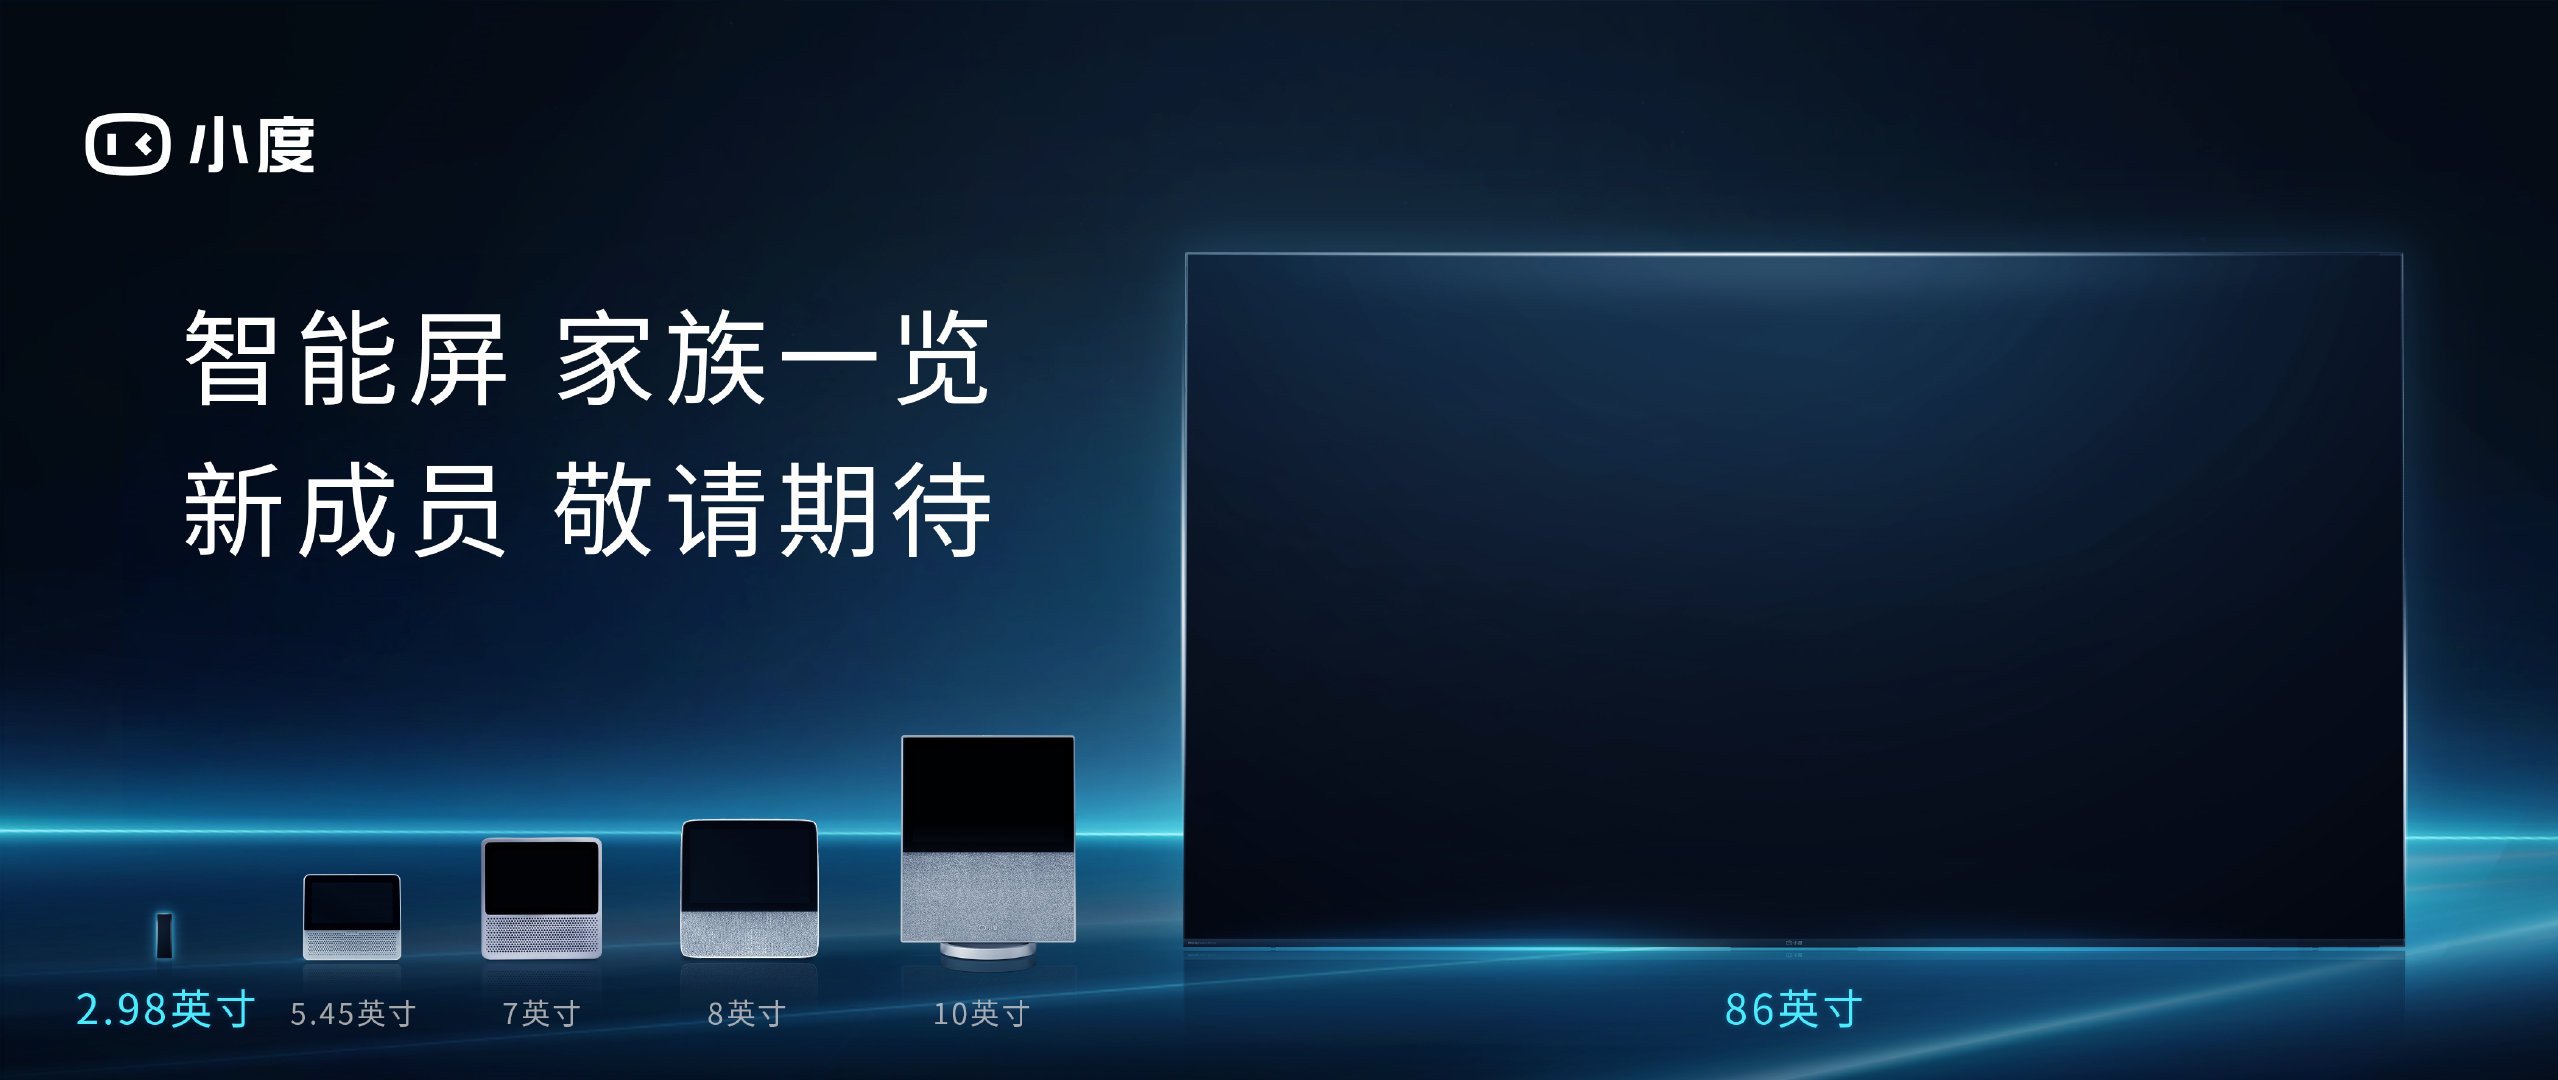 Baidu Xiaodu Smart Screen Will Launch Two New Smart TV